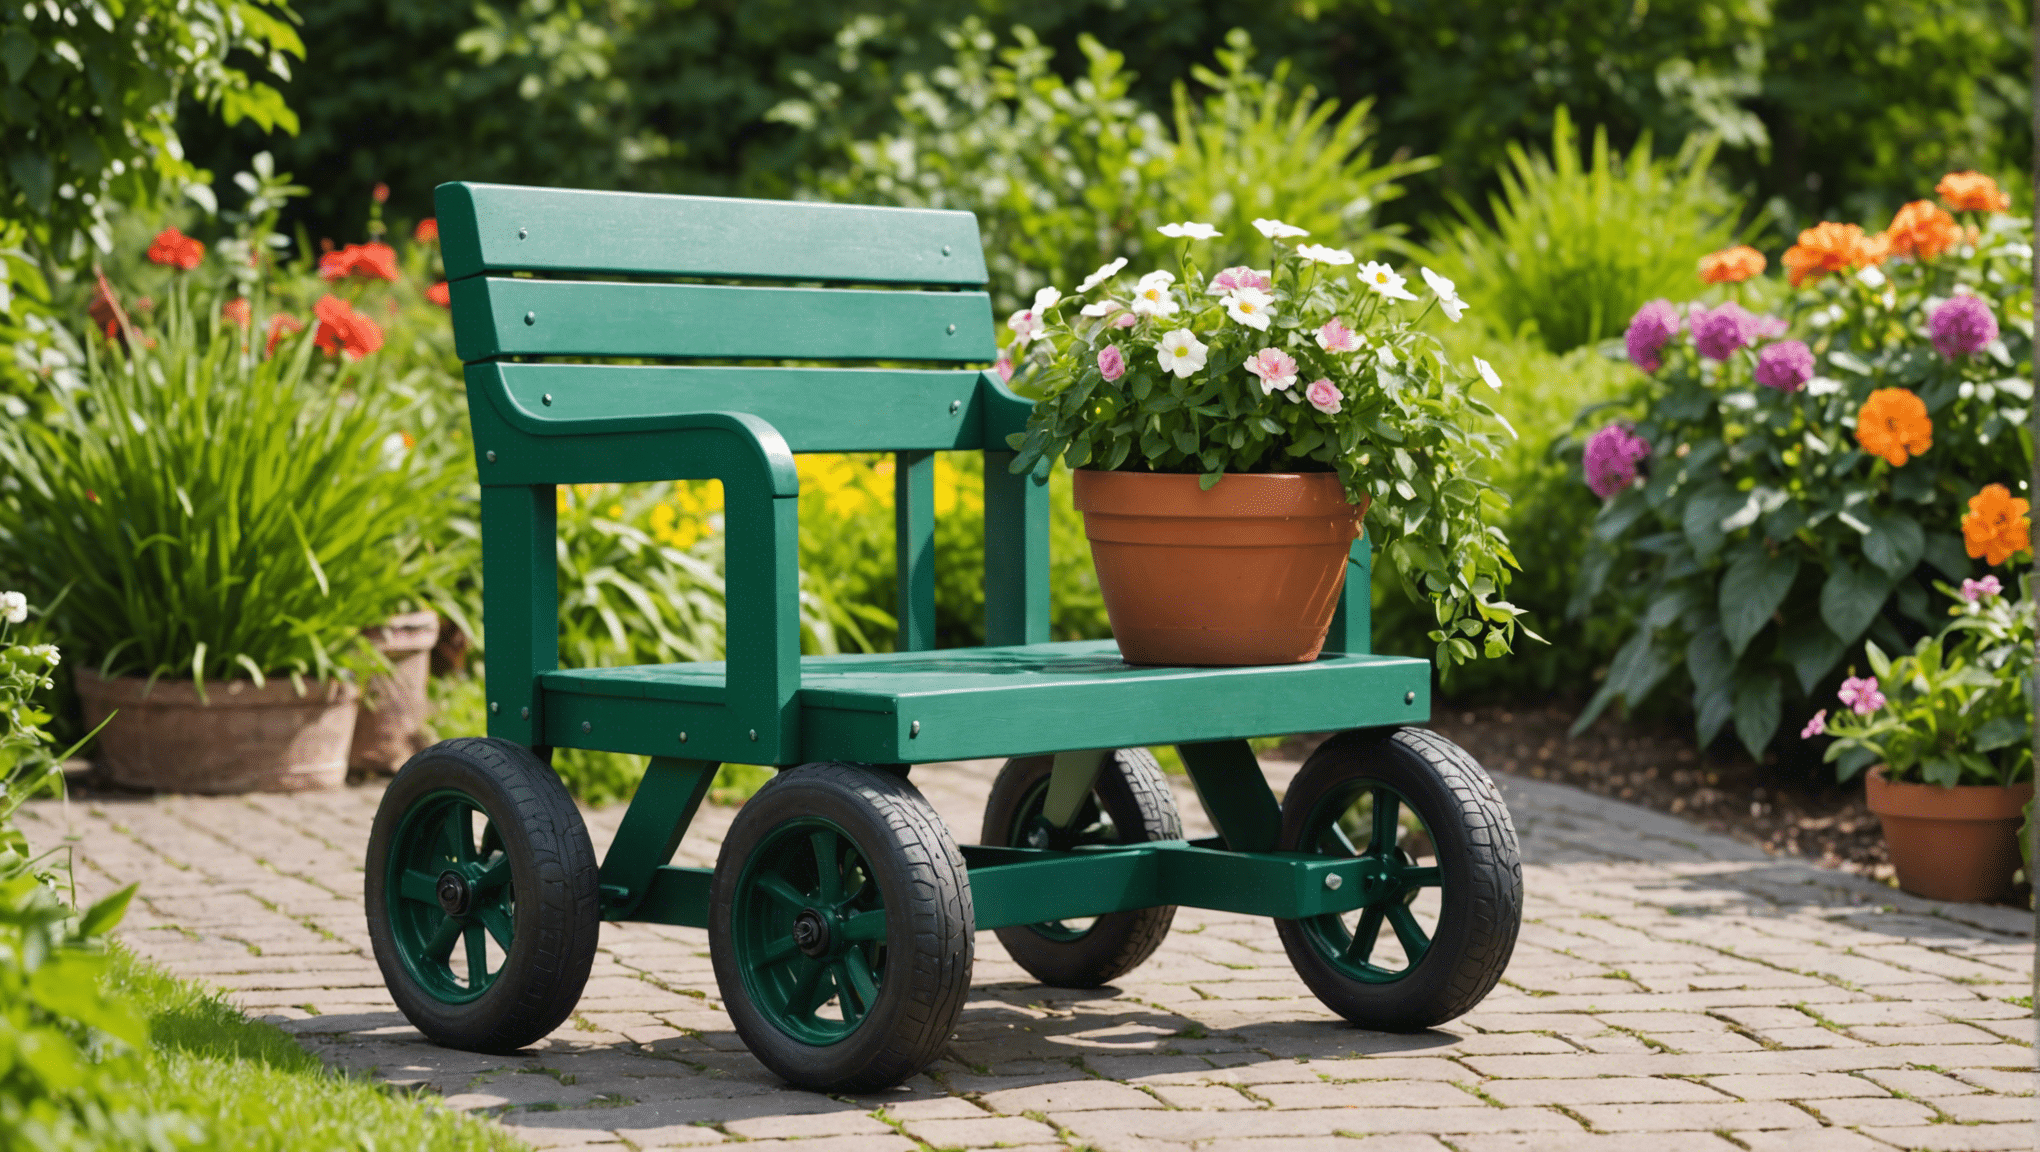 Descubra los beneficios de invertir en un asiento de jardín con ruedas y transforme su experiencia de jardinería. Descubra cómo esta herramienta versátil puede mejorar su comodidad y productividad en el jardín.